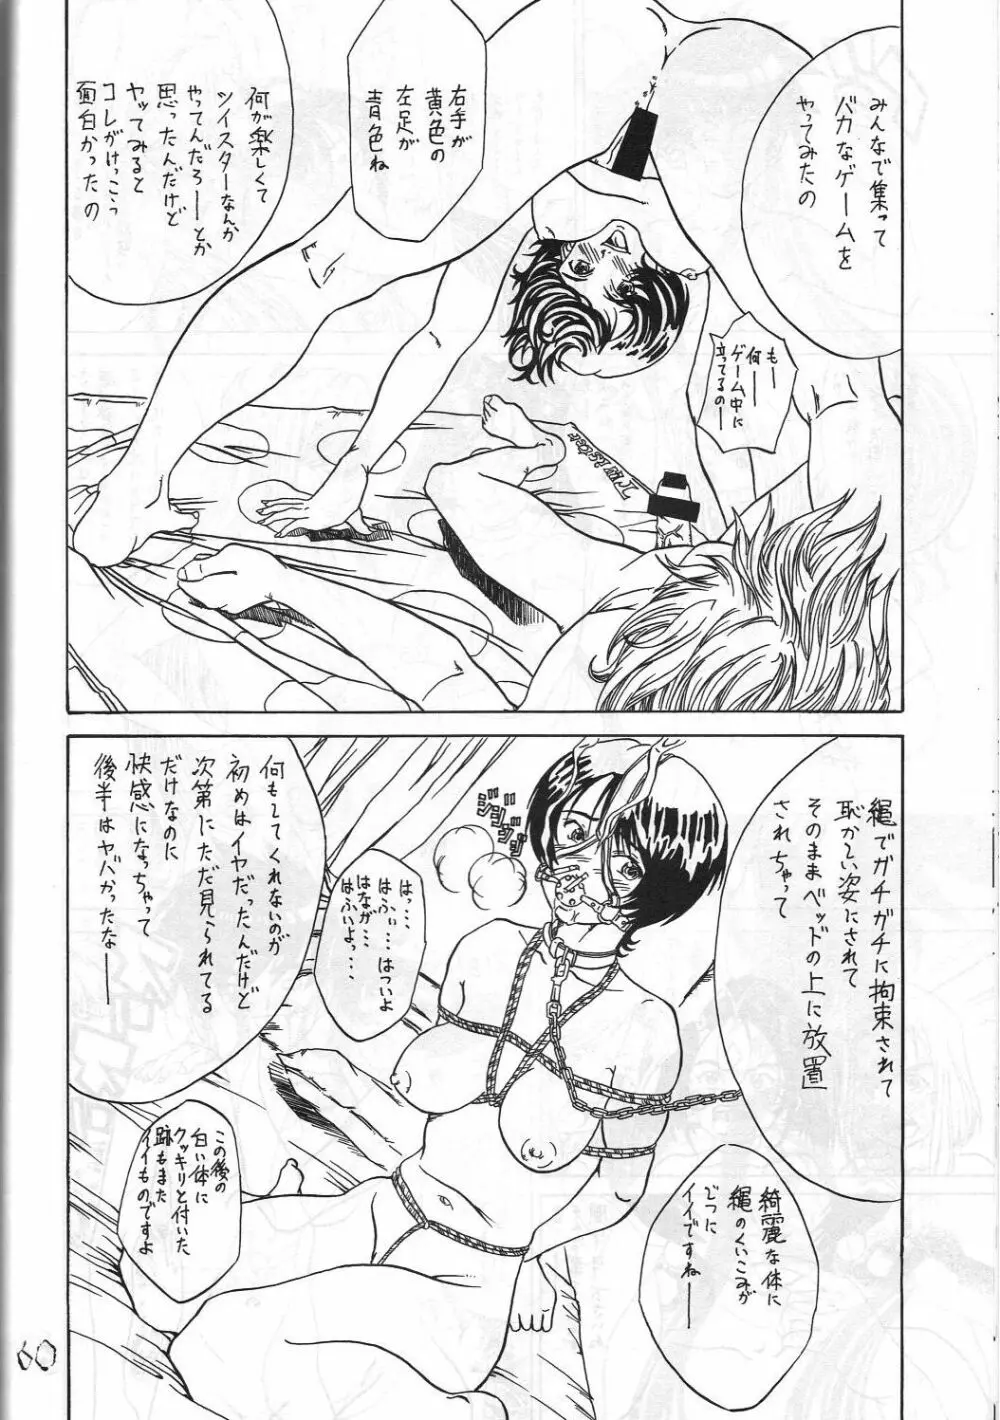 機関車は俺のジョンソン in my life (美竹) Eanakuoto (ああっ女神さまっ) - page61